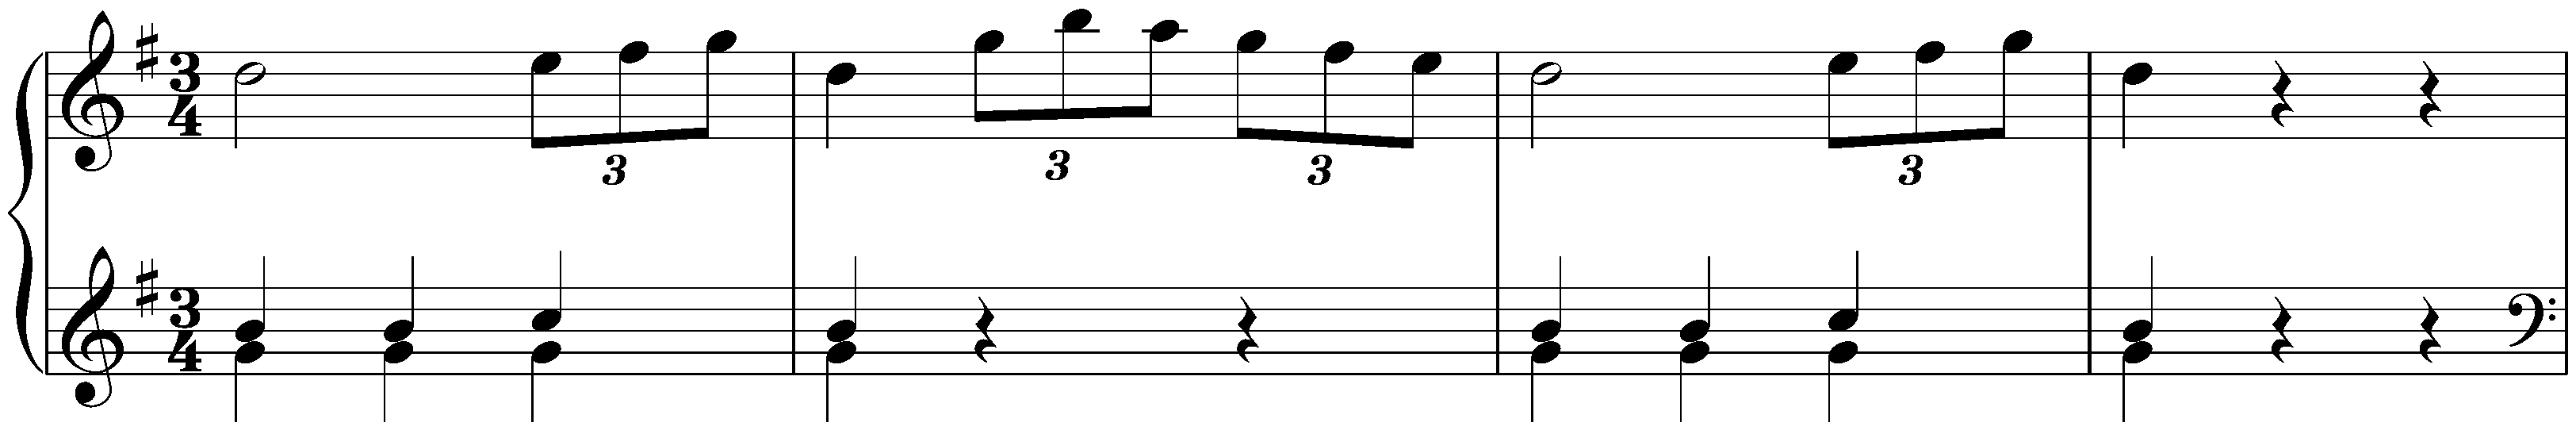 Sonata in G major, Hob. XVI:G1; 2. Minuetto – Trio